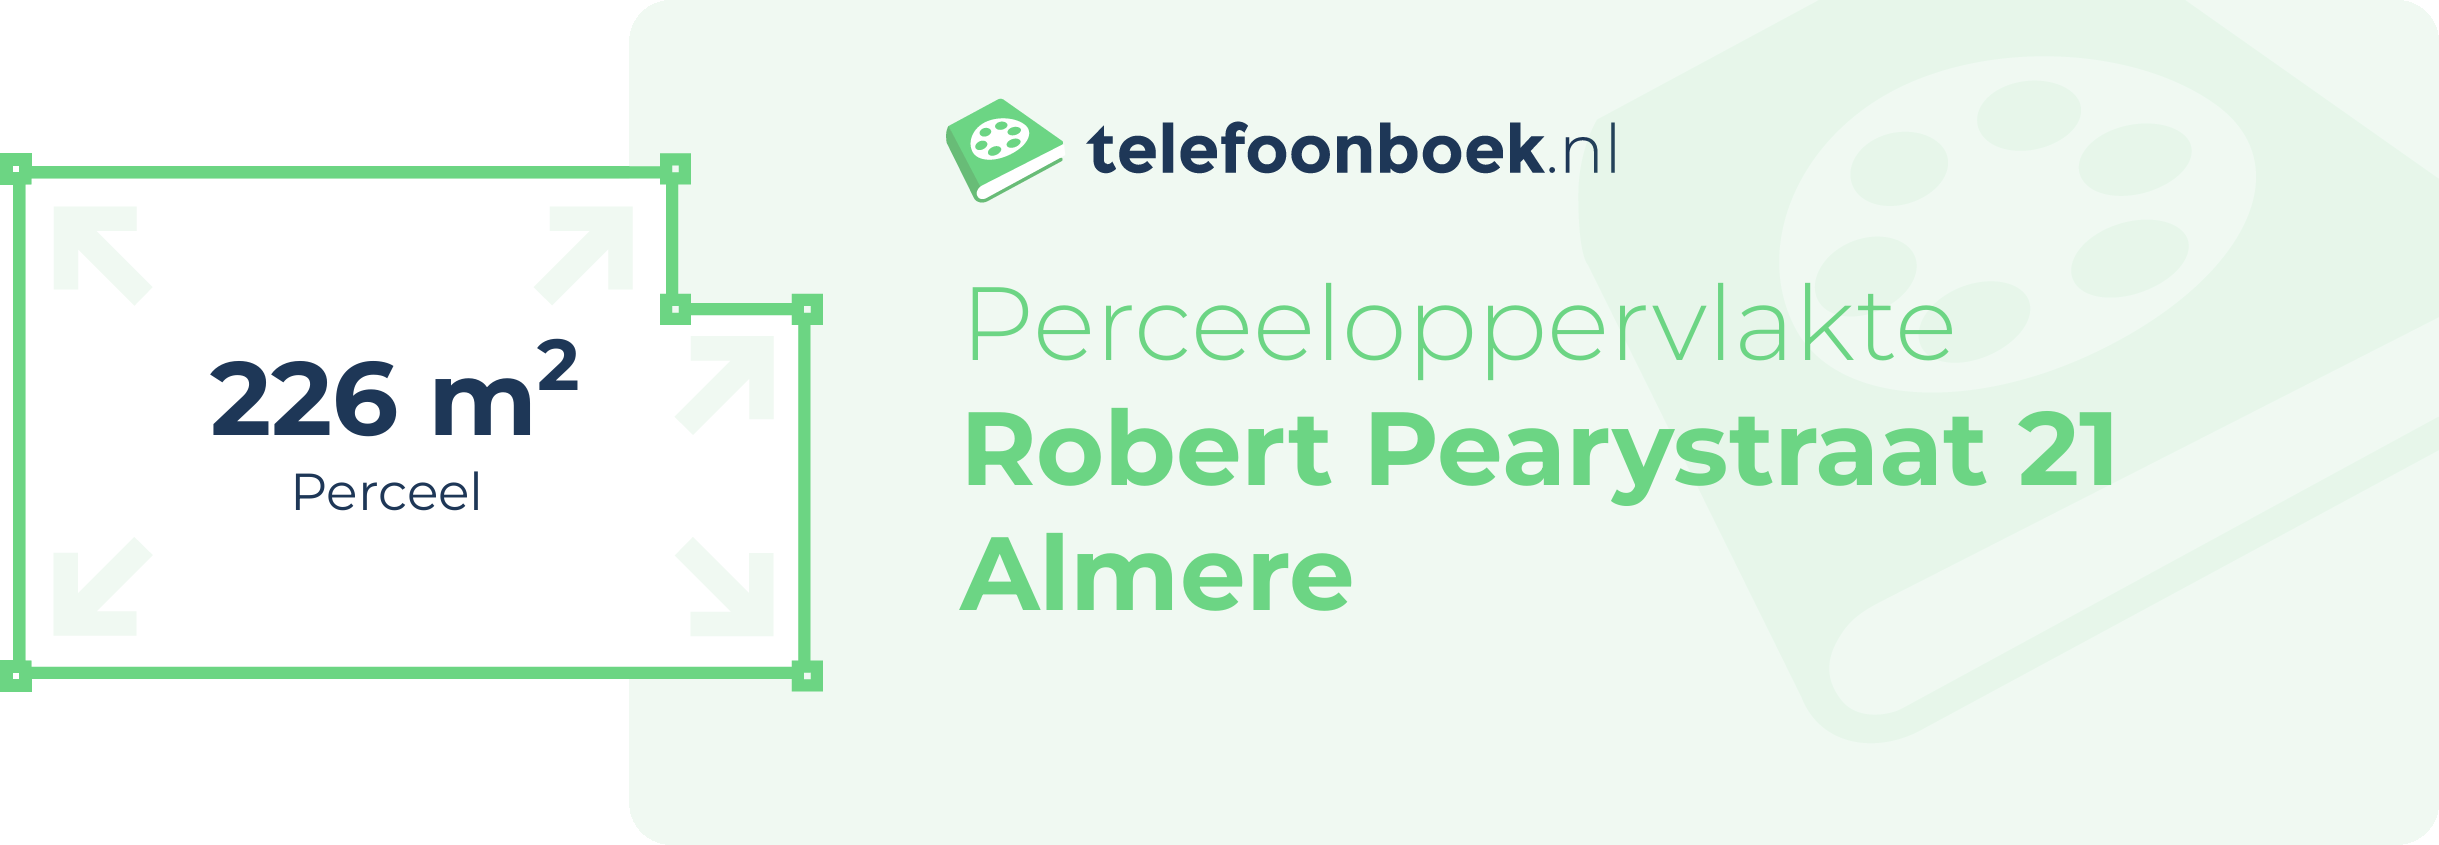 Perceeloppervlakte Robert Pearystraat 21 Almere